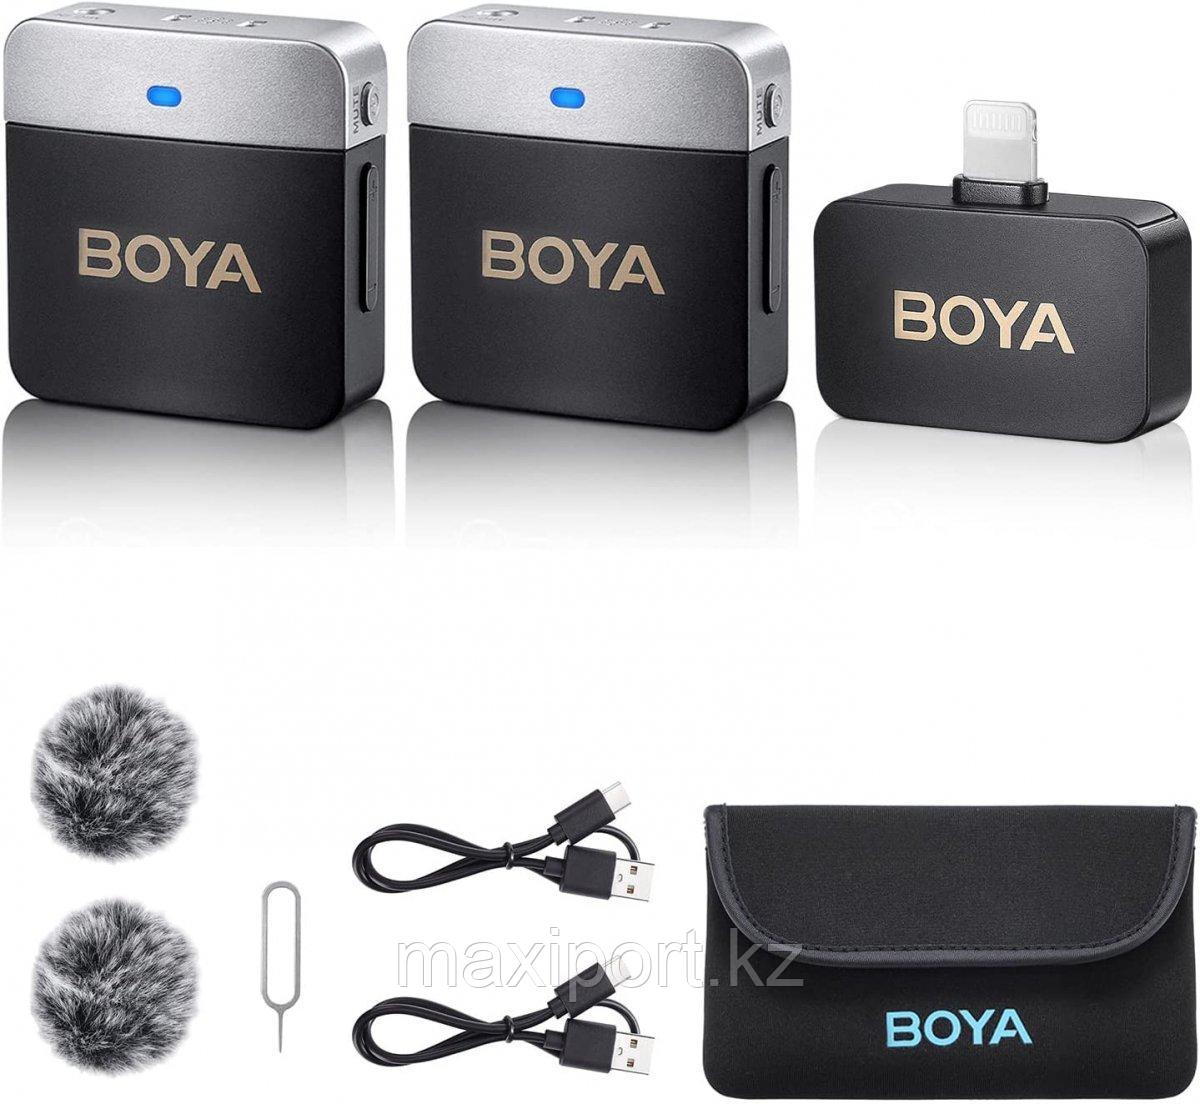 Boya BY-M1V6 беспроводной петличный микрофон (Lightning) двойной до 60 метров